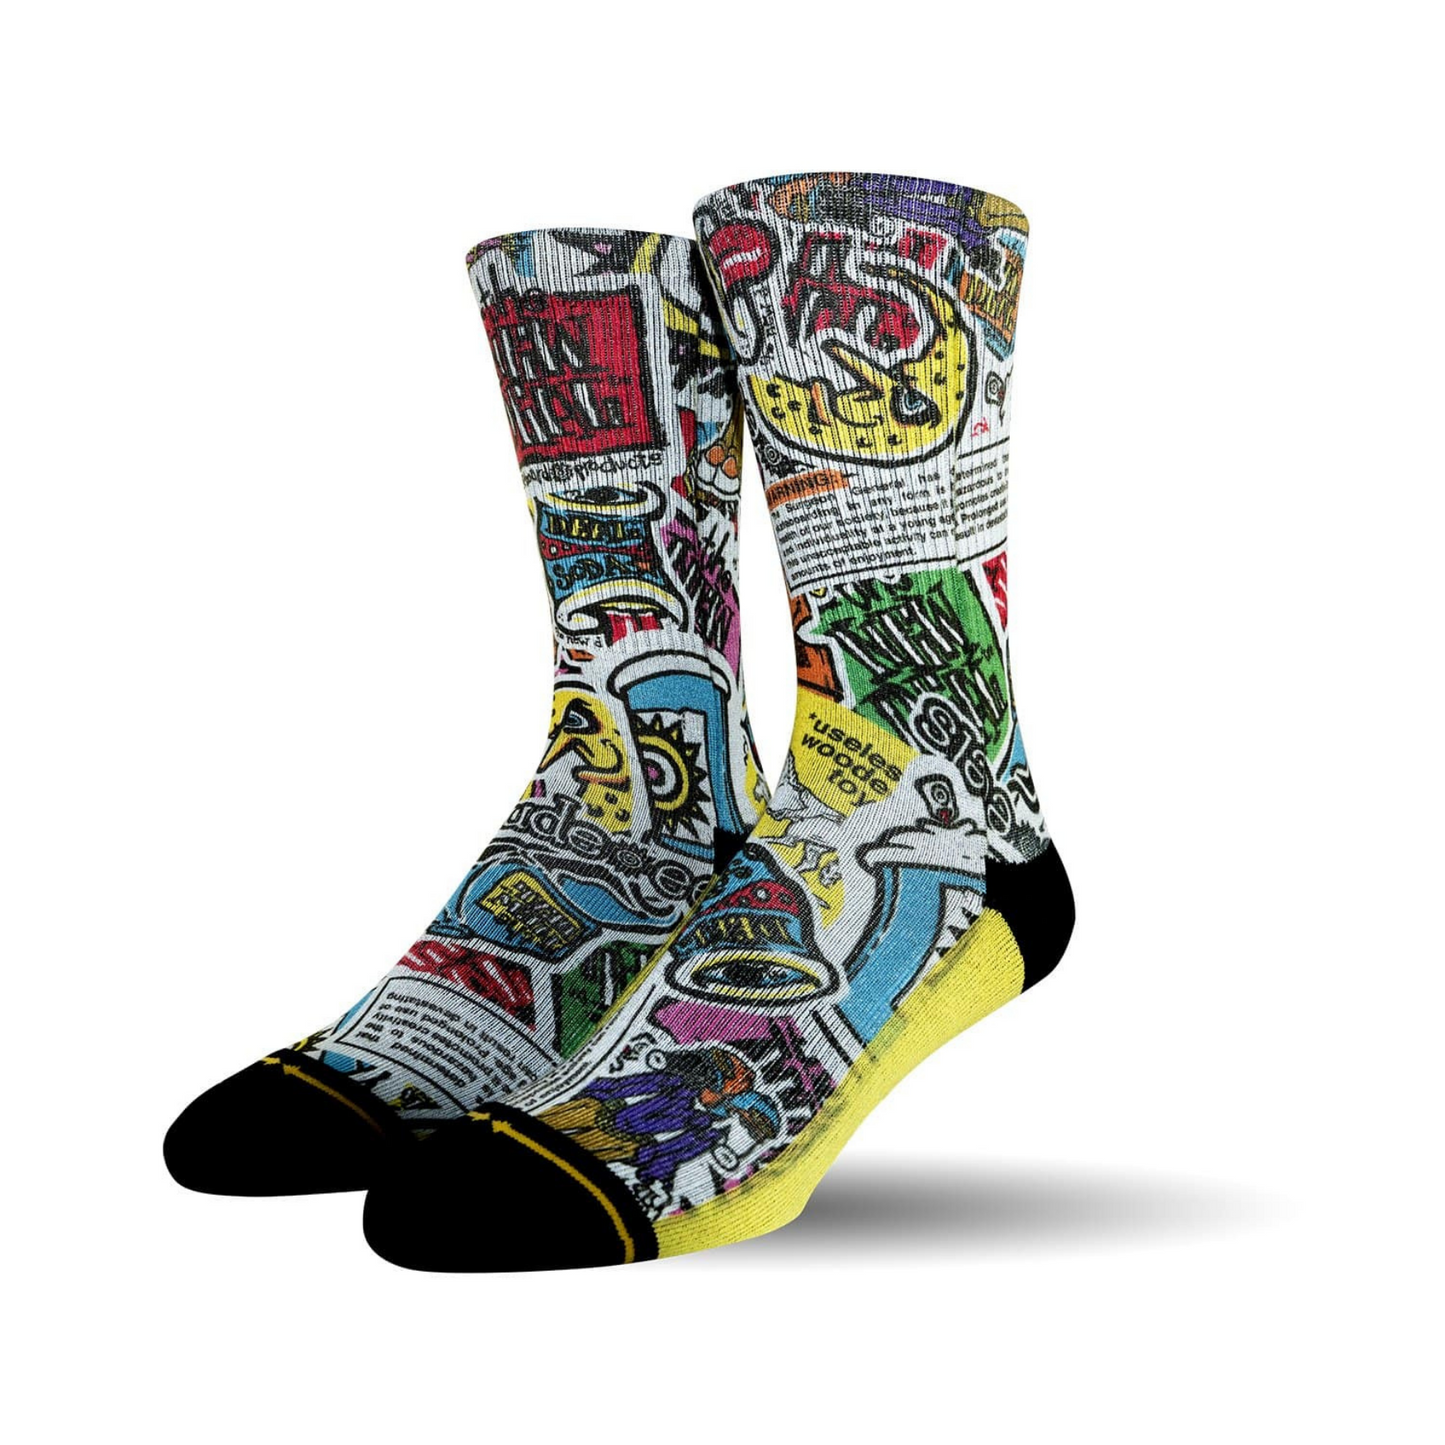 Merge 4 - New Deal Sticker Pack Socks